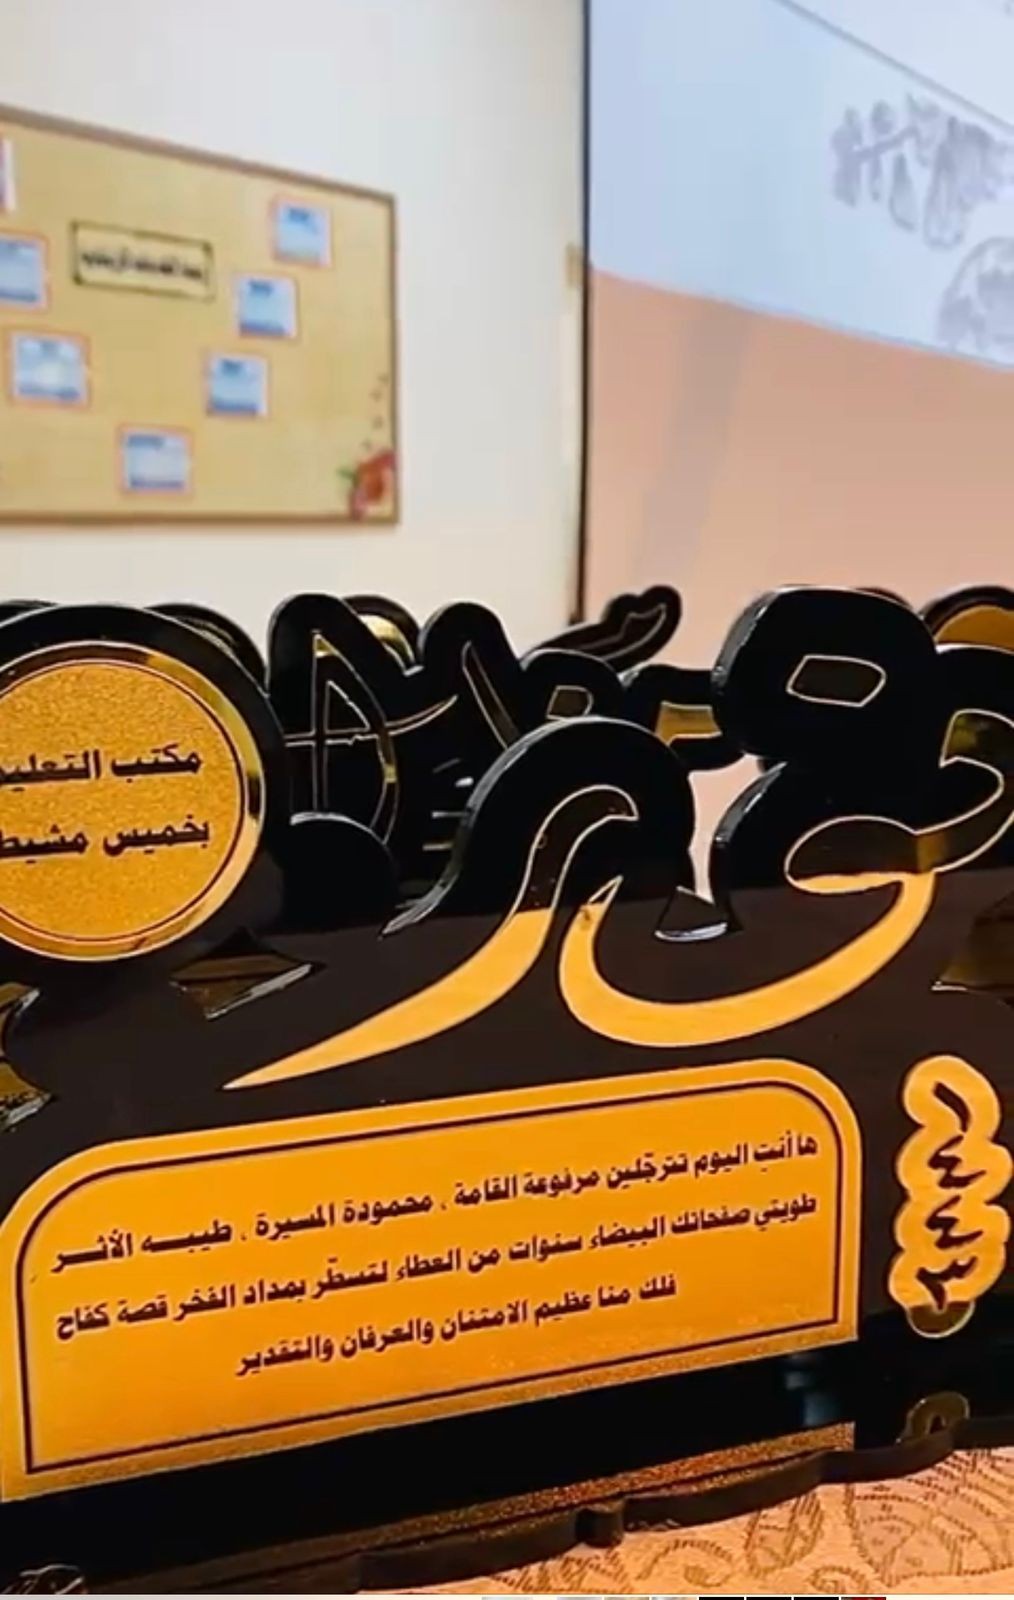 مكتب تعليم خميس مشيط يقيم حفلًا تكريميًا لمنسوباته "عطاء ووفاء"